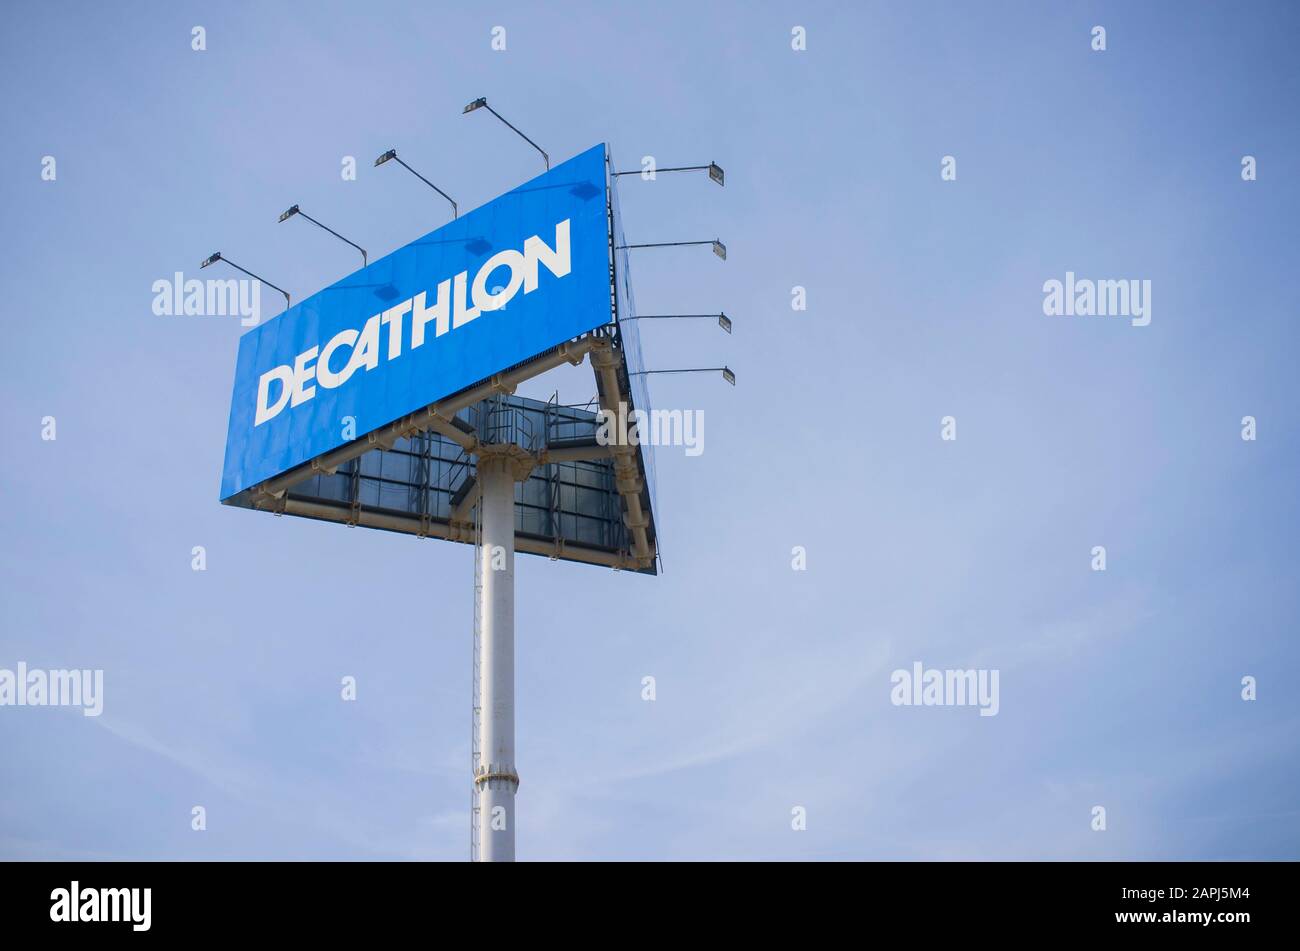 decathlon stores worldwide